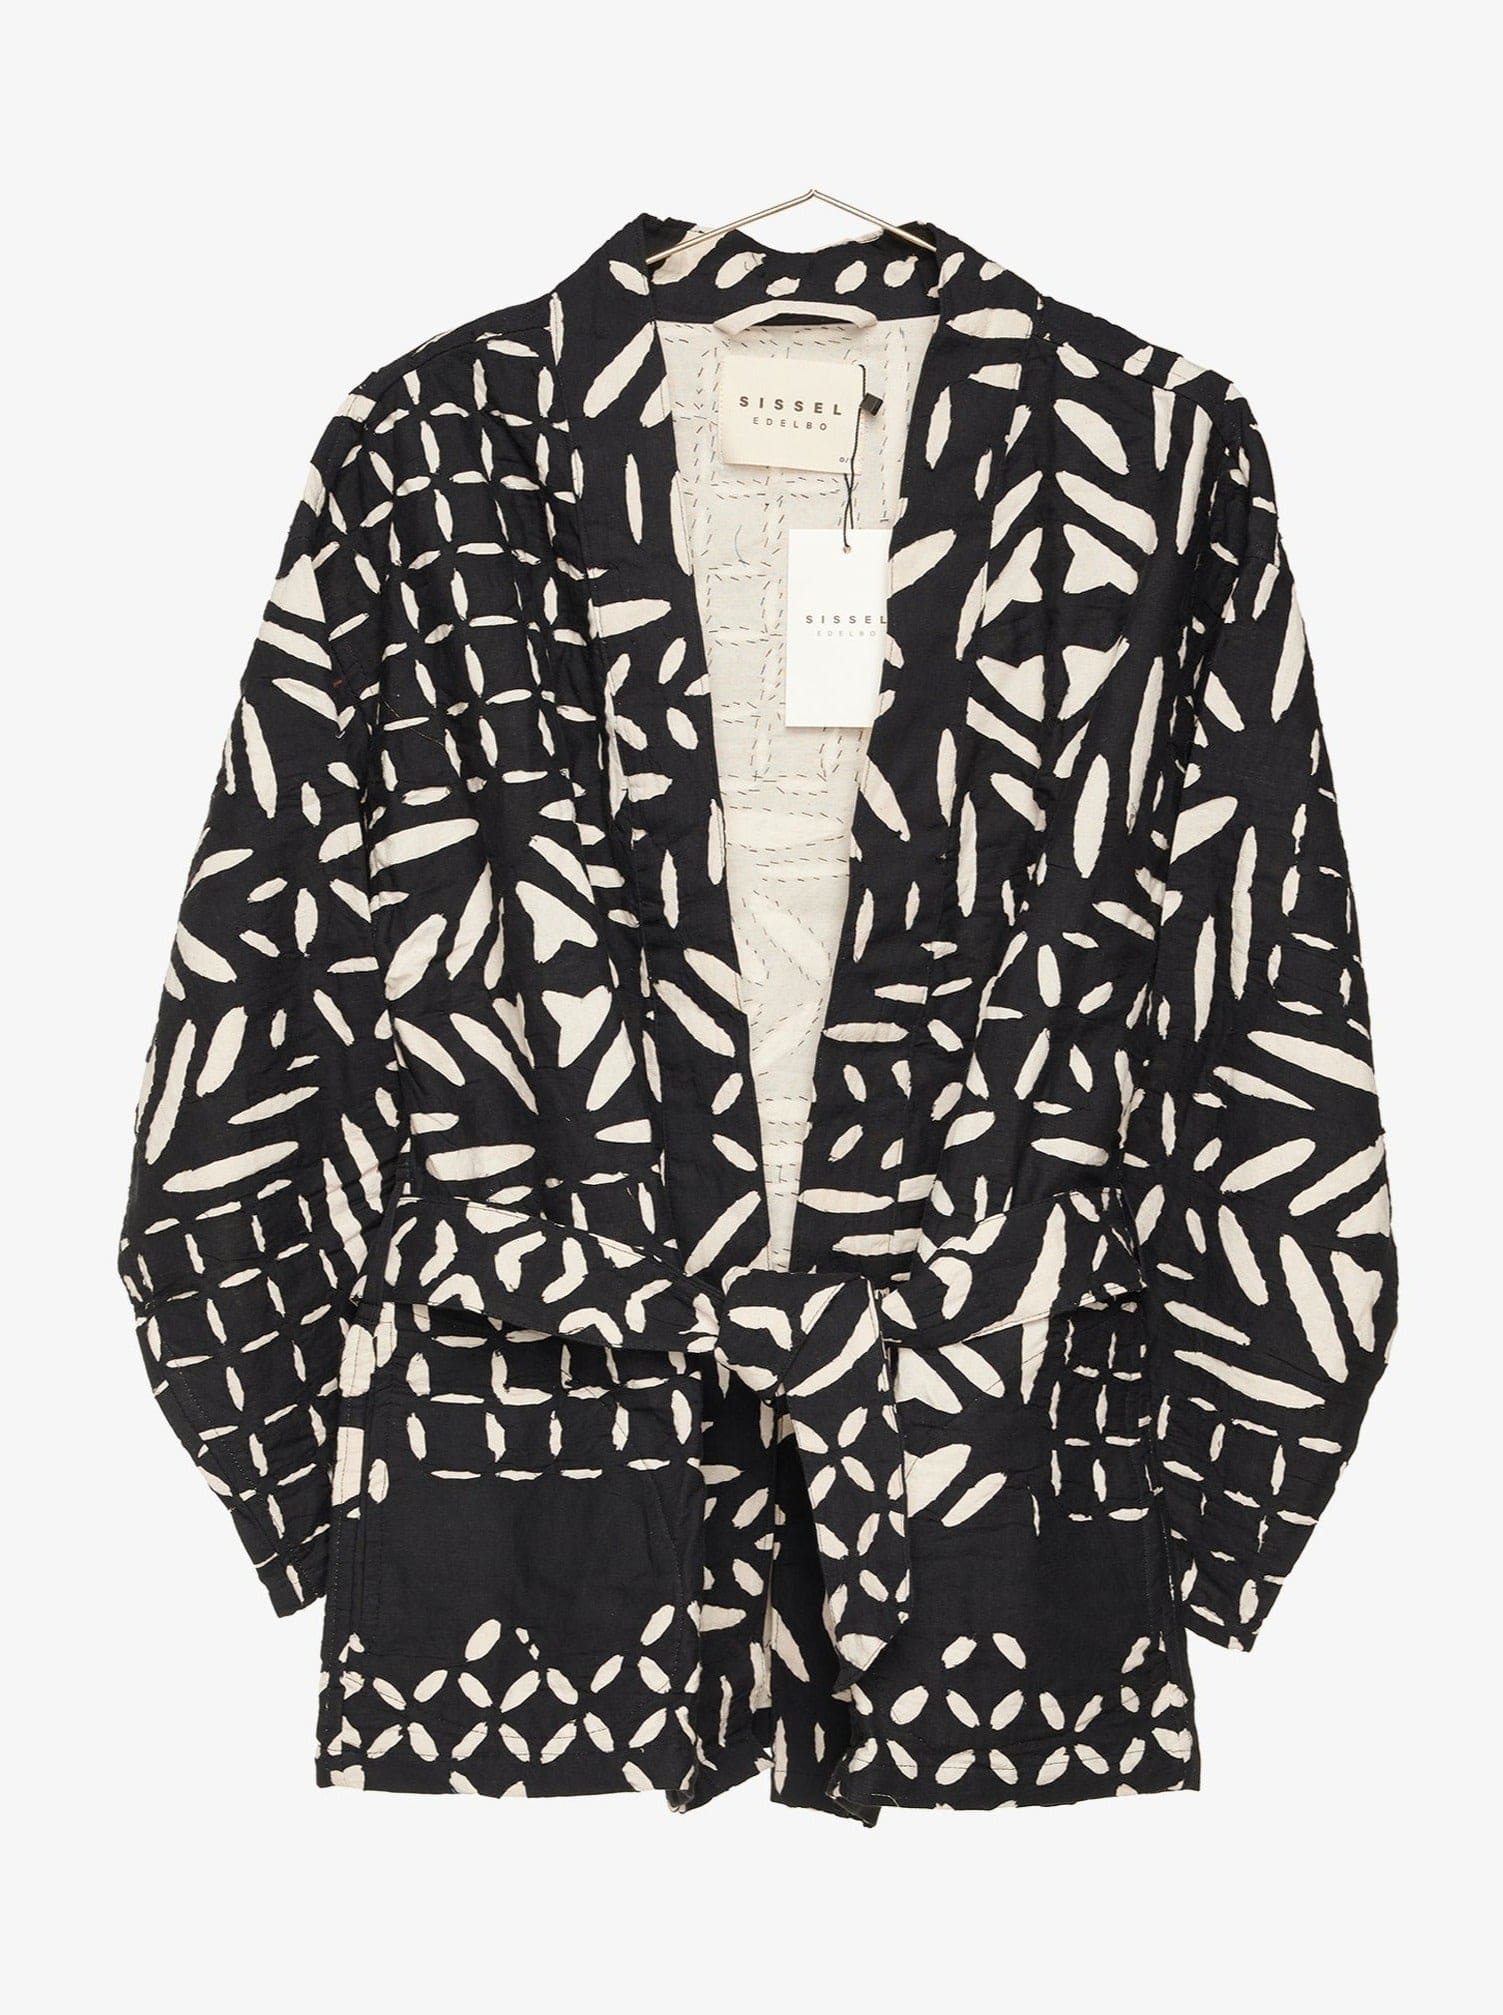 Mønstret bomulds jakke Aura blanket jacket - Sissel Edelbo sss - sort/hvid (Bemærk Preorder)